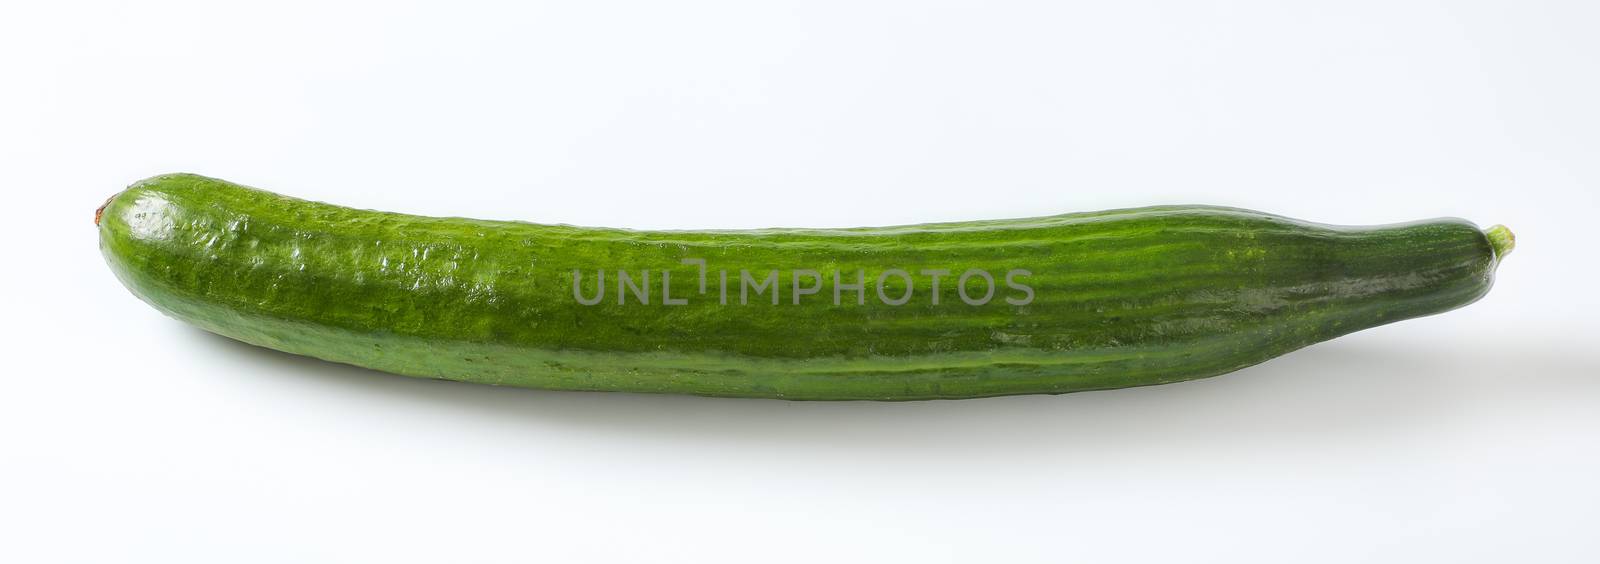 single long cucumber by Digifoodstock